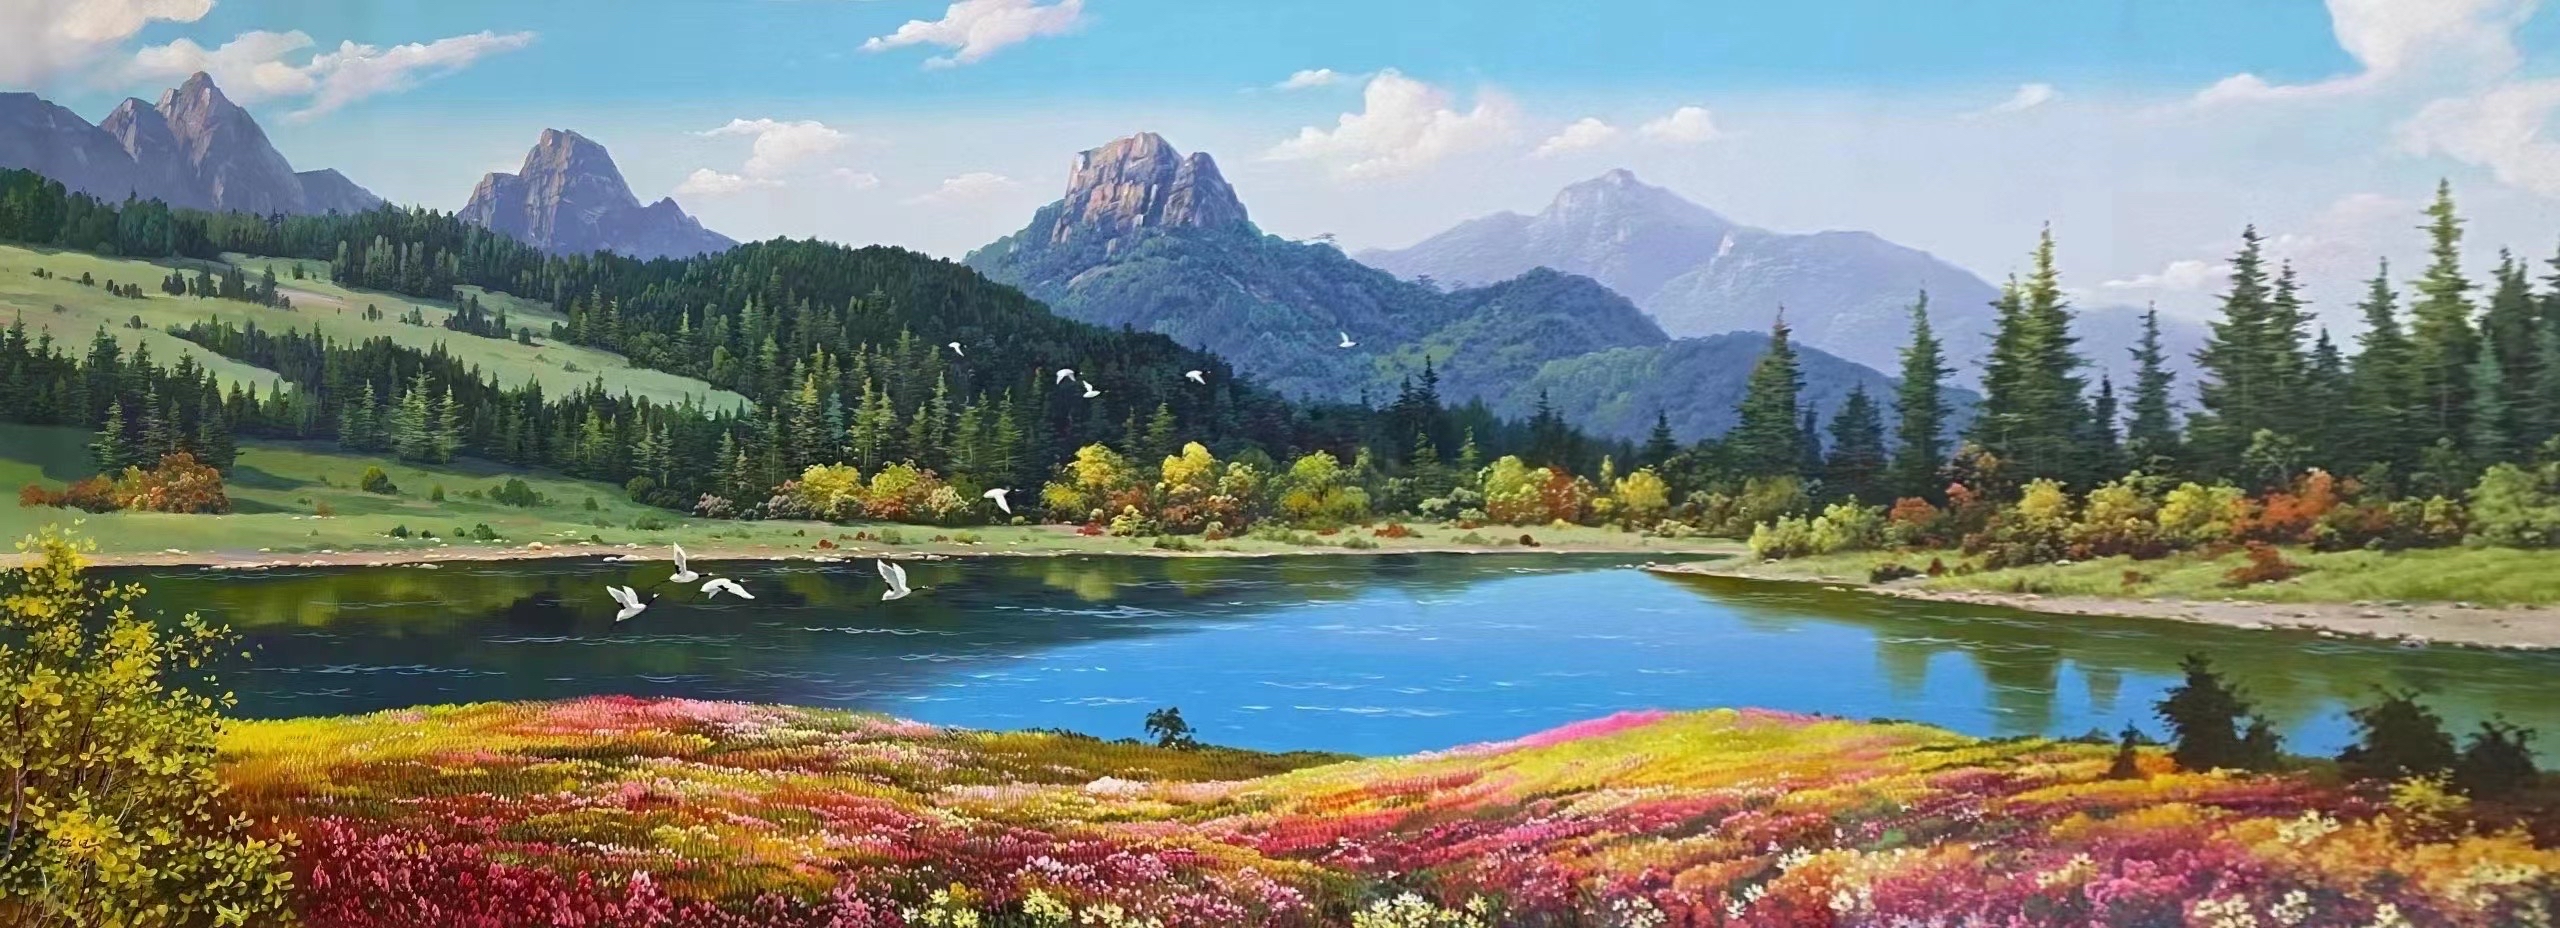 朝鲜油画风景图片大全图片